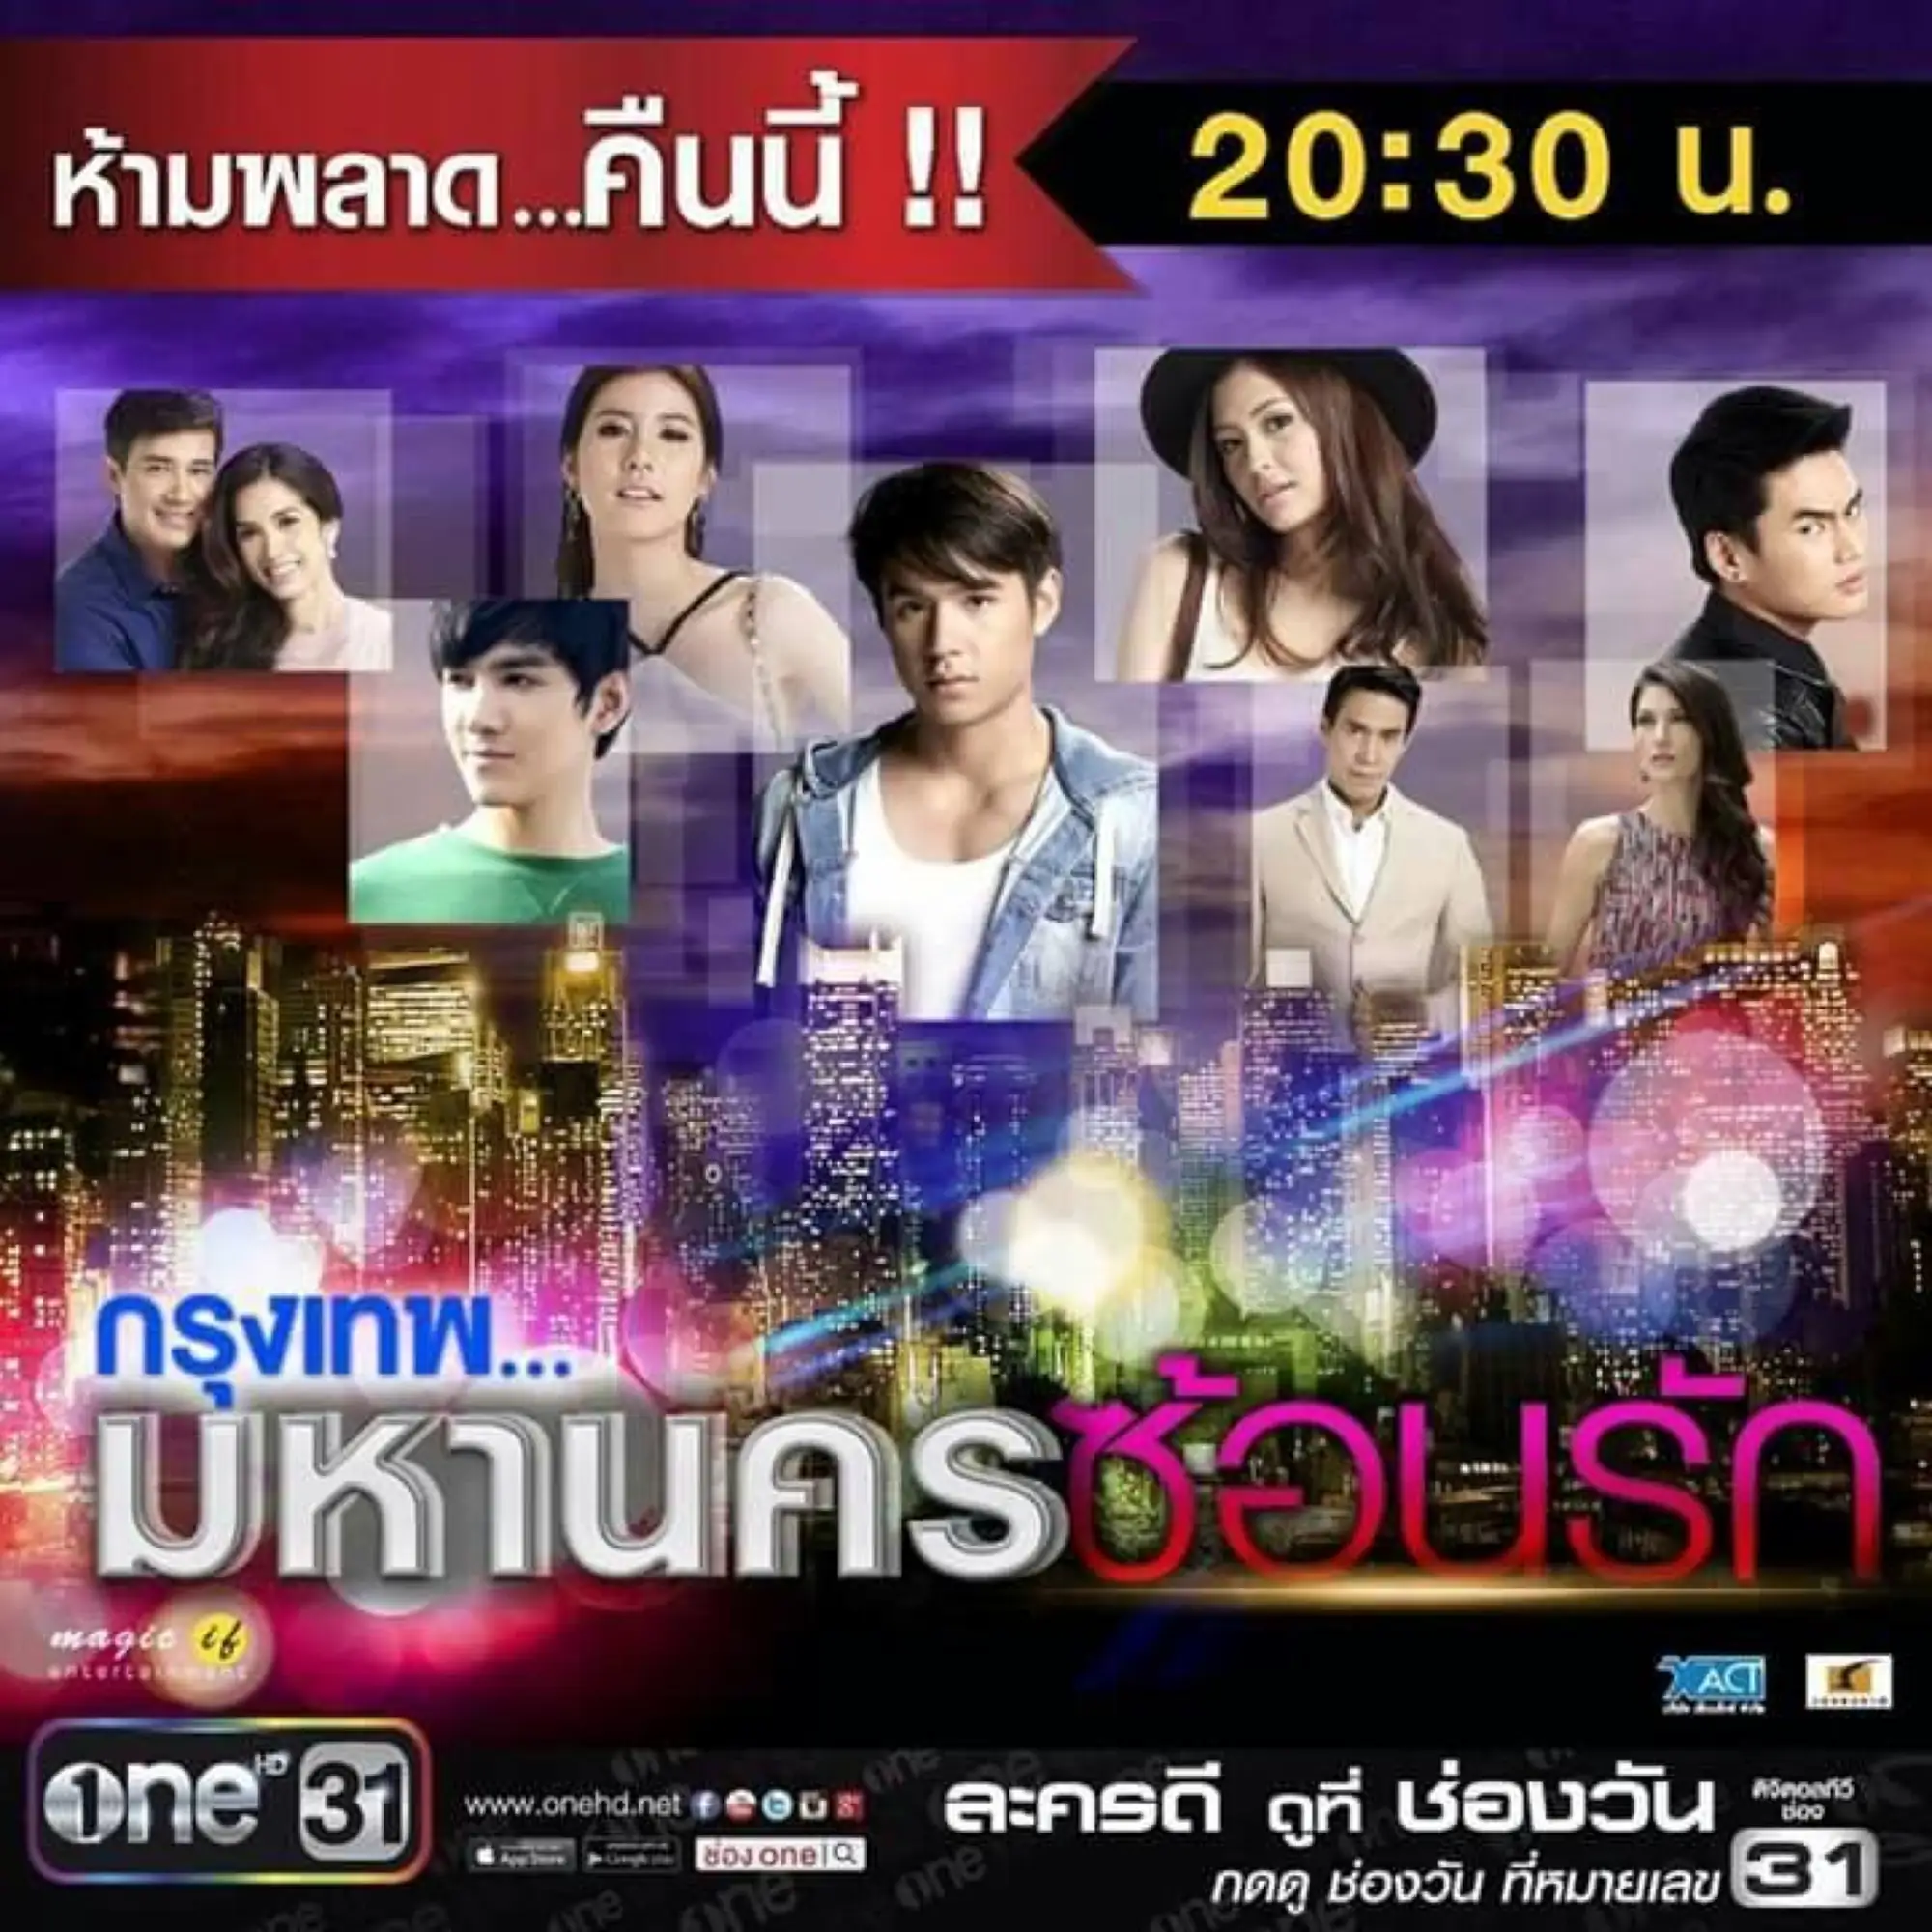 泰劇《曼谷匿愛》海報(圖片來源:臉書專頁@กรุงเทพ..มหานครซ้อนรัก)